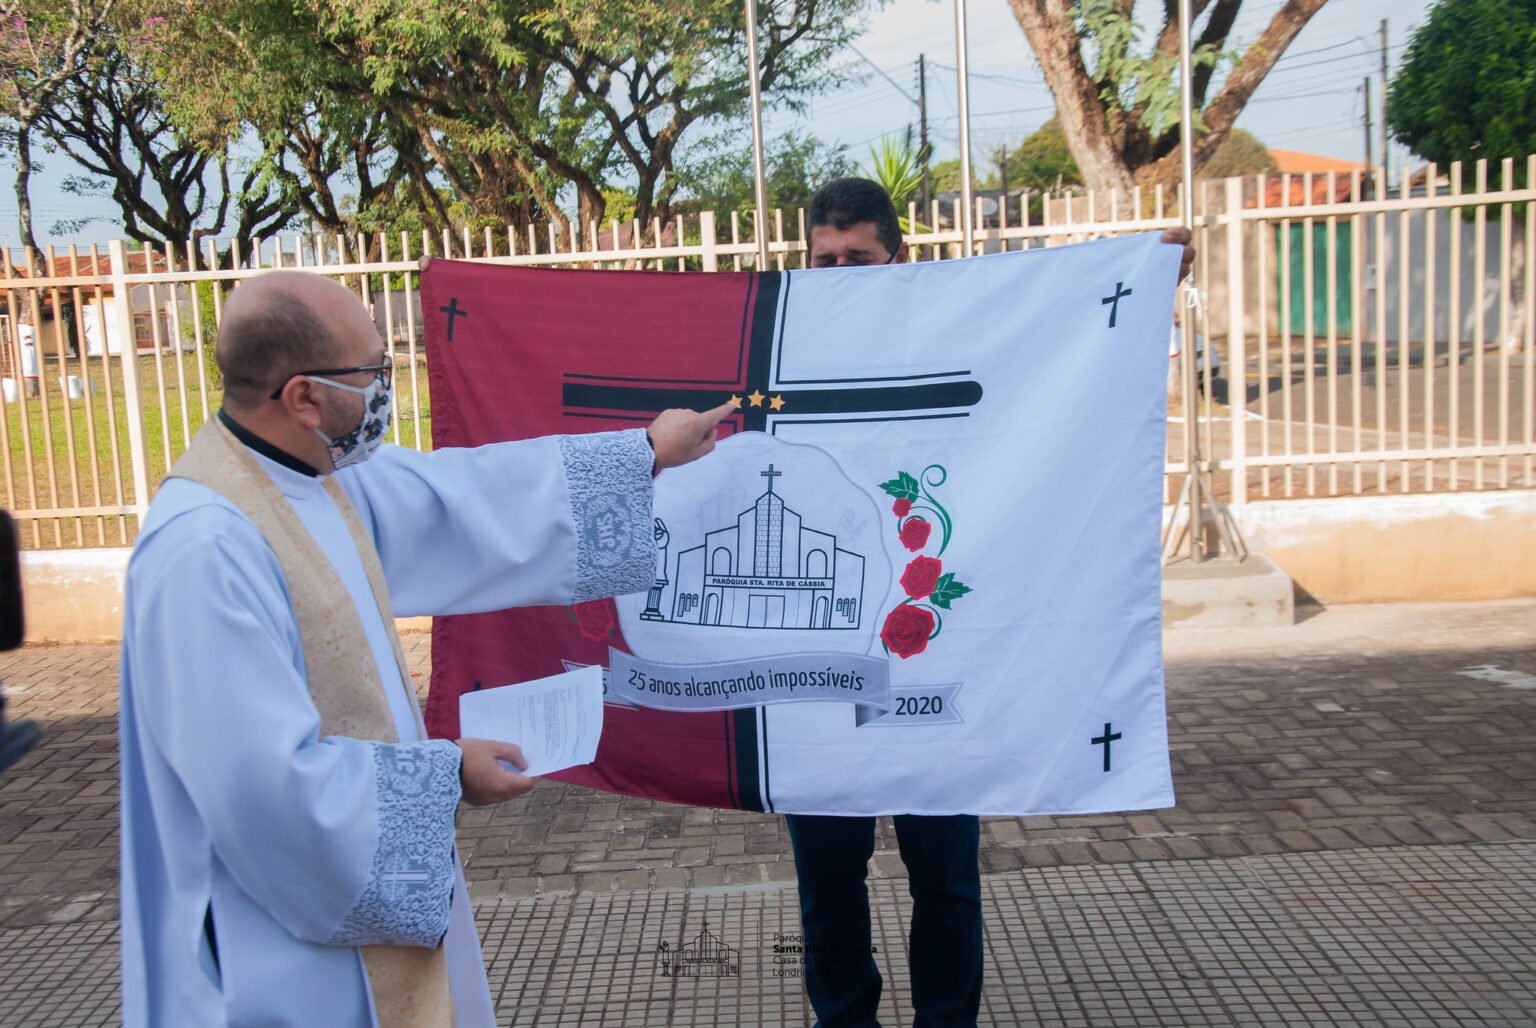 Paróquia Santa Rita ganha bandeira comemorativa dos 25 anos